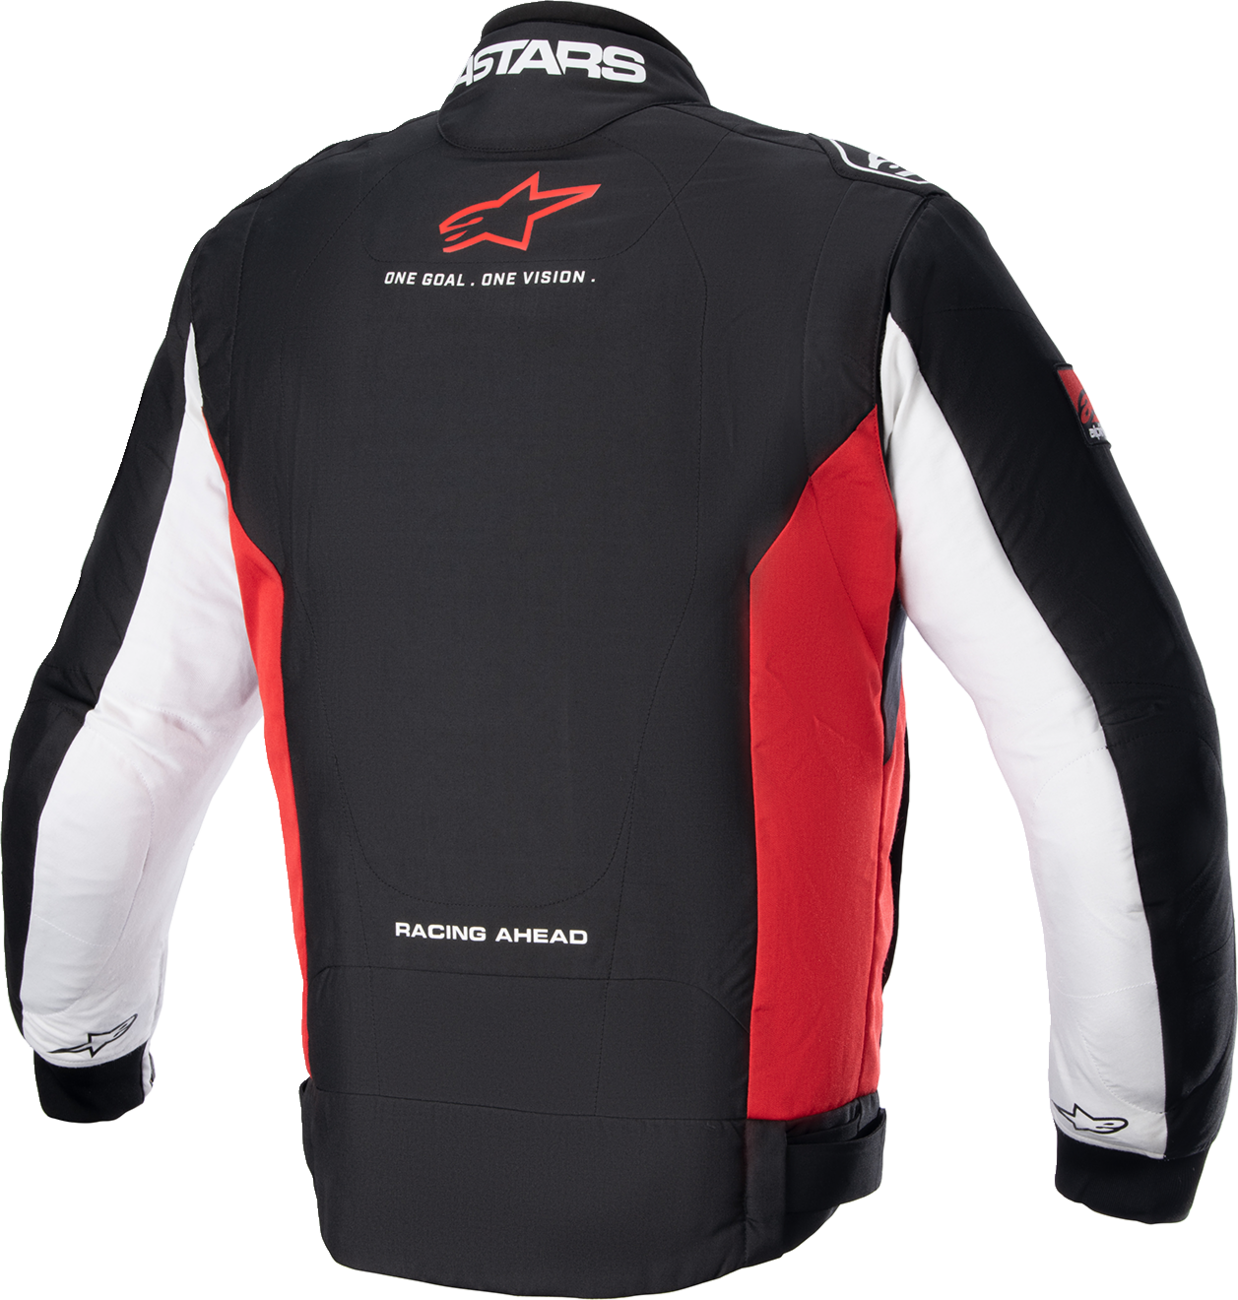 ALPINESTARS Monza Sport Jacket - Black/Red/White - Medium 3306723-1342-M